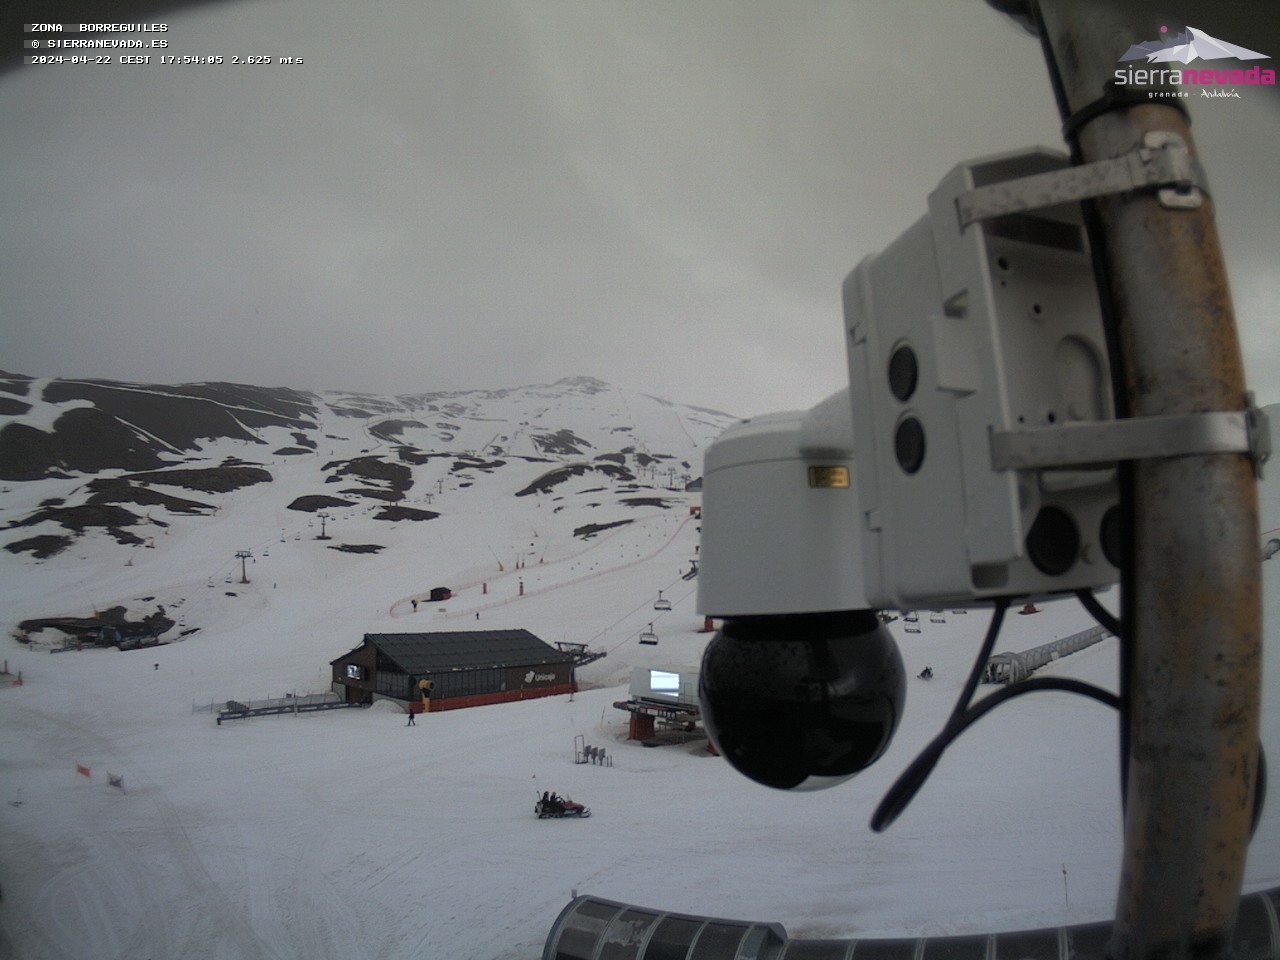 Webcam Borreguiles - Sierra Nevada Esqui